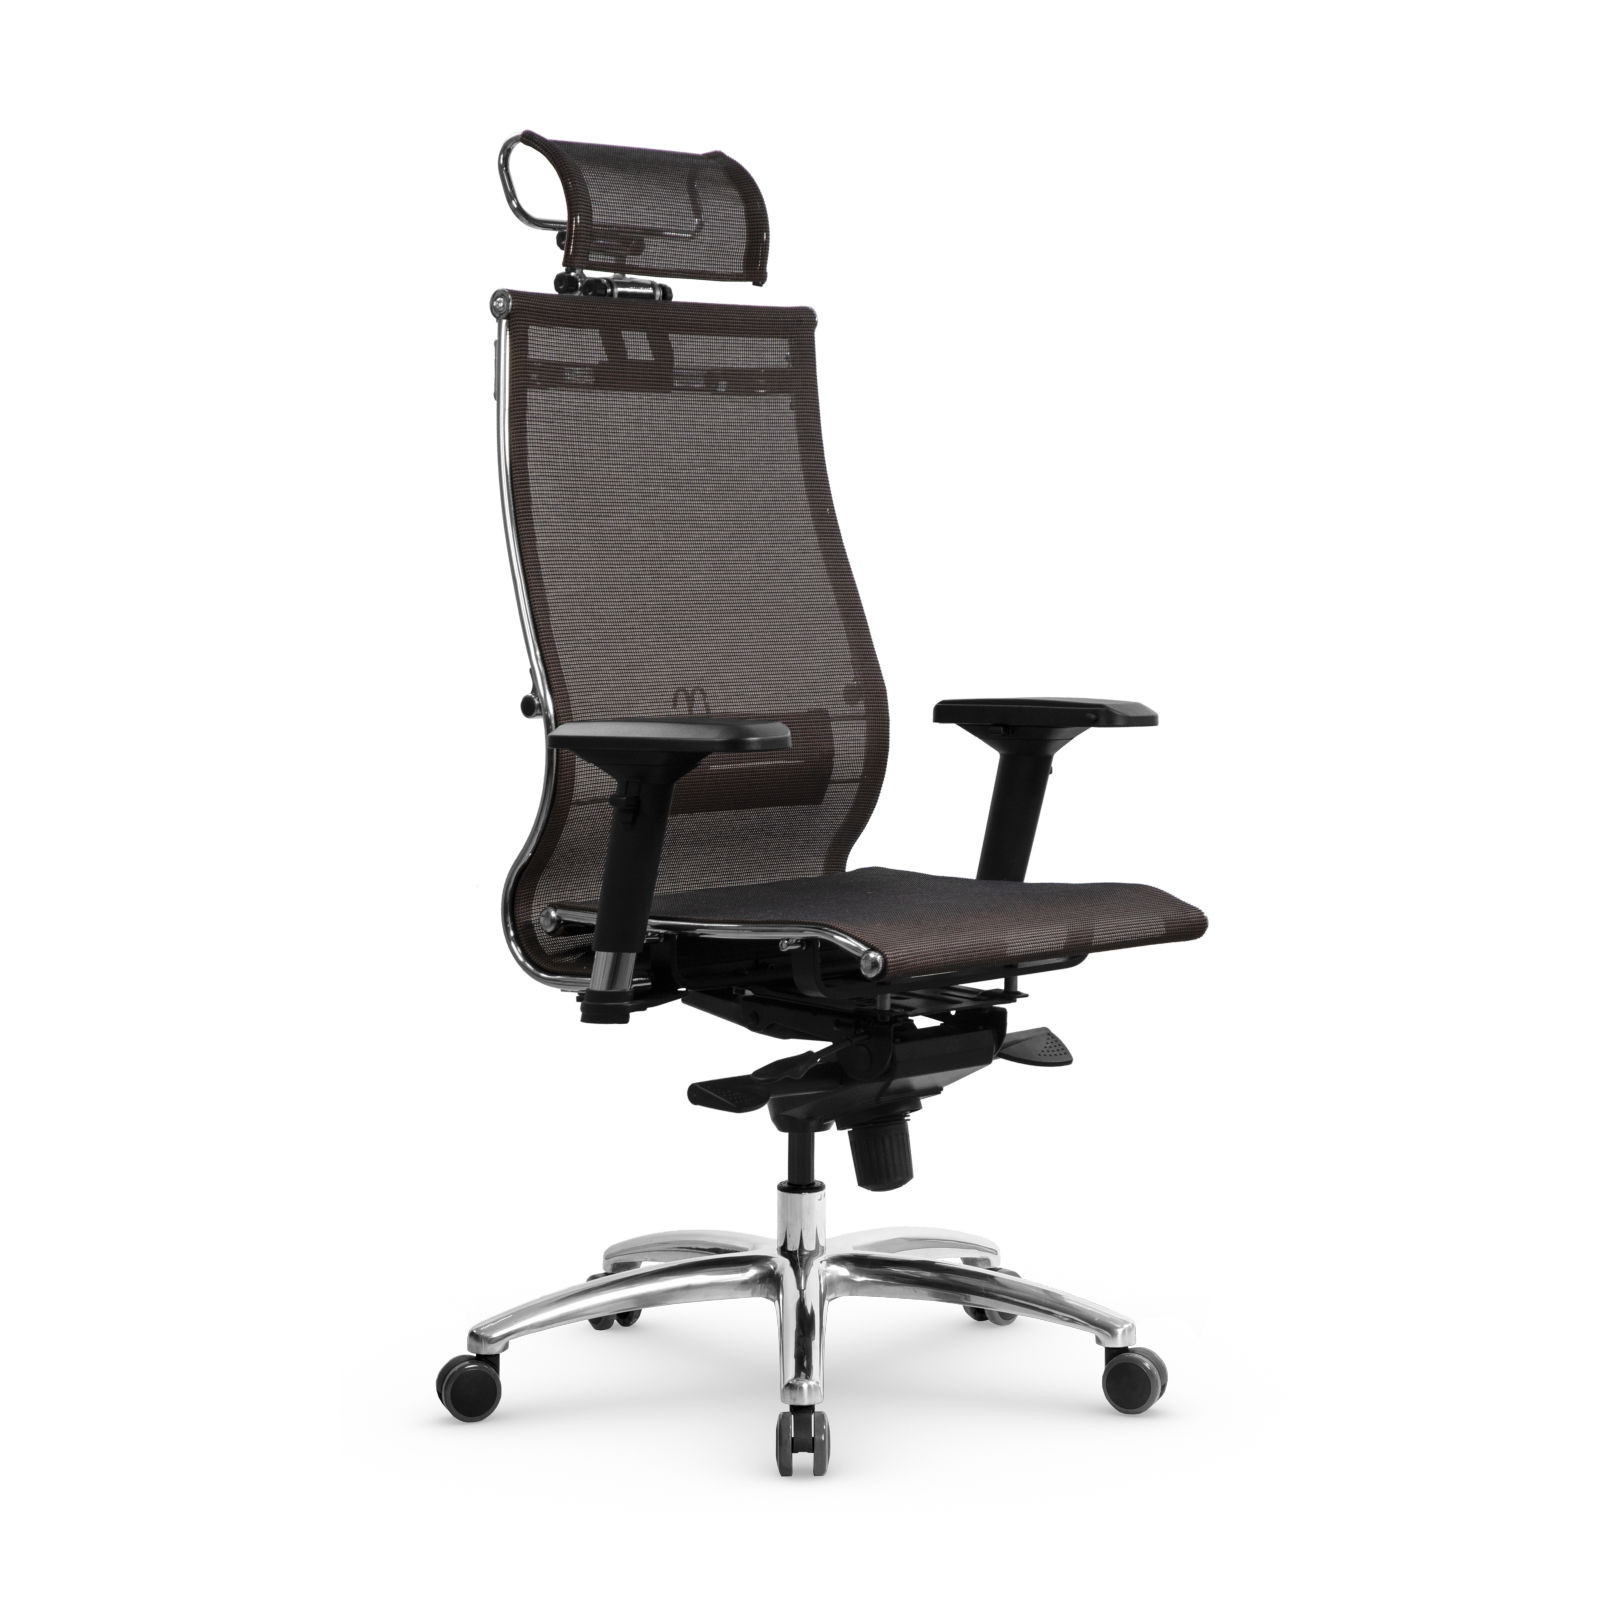 Кресло Samurai TV-3.06, офисное кресло, компьютерное кресло, кресло самурай, кресло для дома и офиса, кресто Metta (Темно-коричневый)